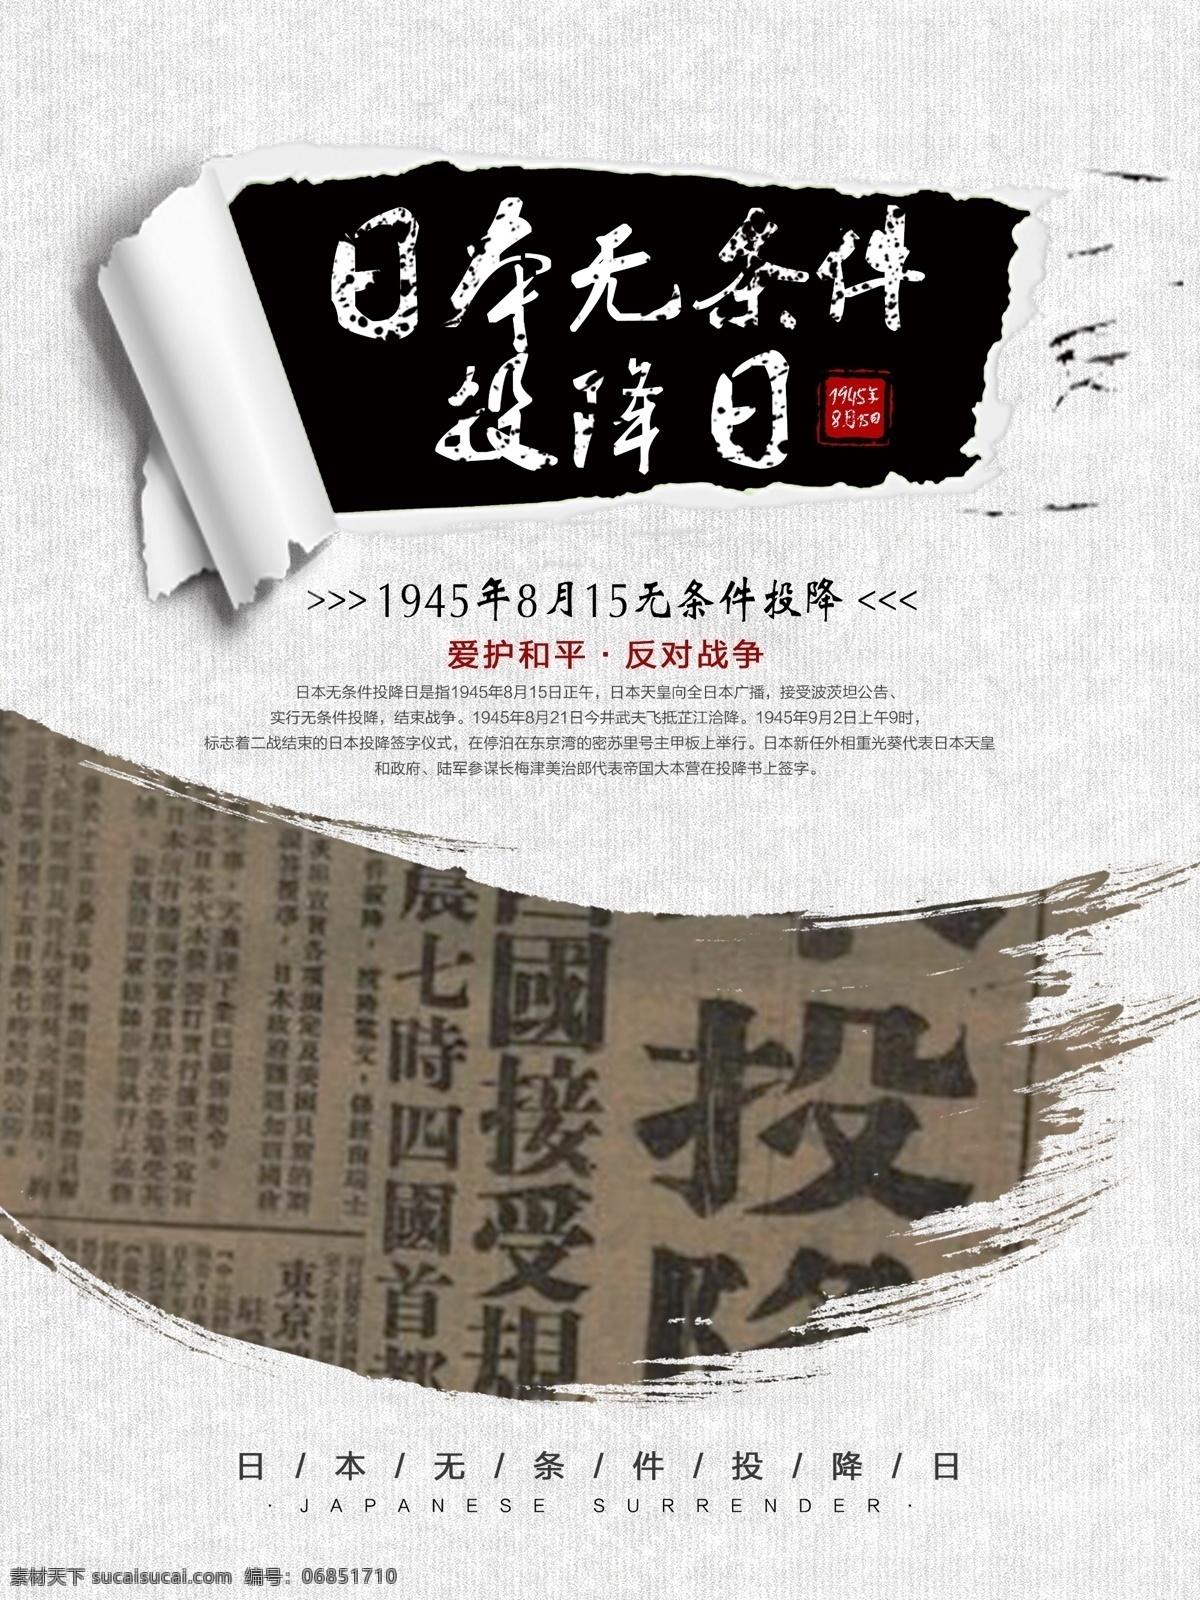 日本 无条件投降 日 公益 宣传海报 公益海报 爱和平 反对战争 投降日 1945